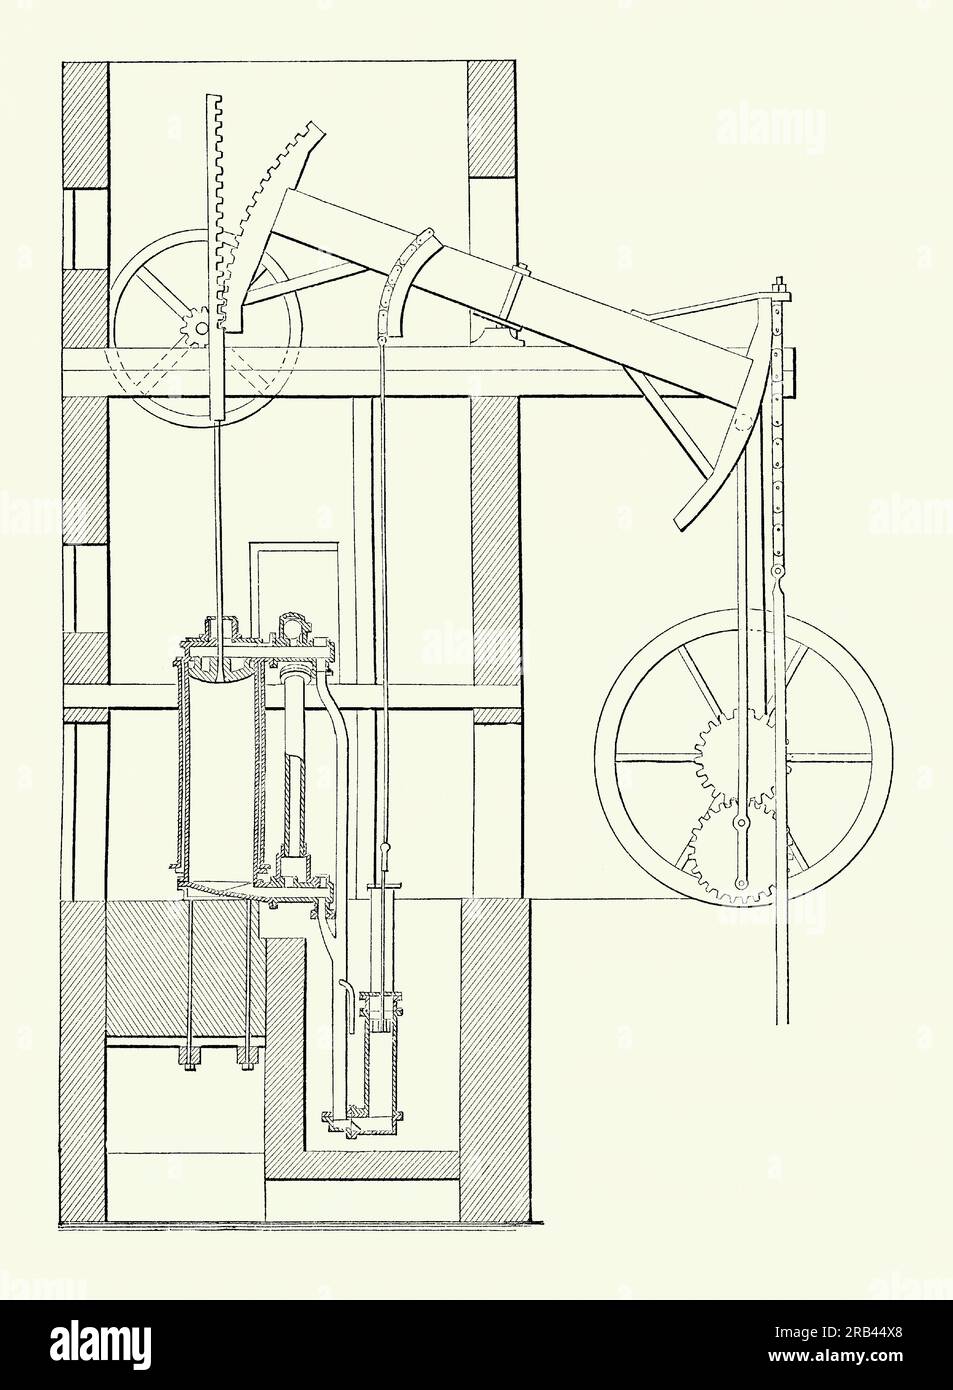 Un antiguo grabado de la máquina de vapor de doble efecto Watt del siglo XVIII. Es de un libro victoriano de ingeniería mecánica de los años ochenta. James Watt desarrolló sus diseños con el apoyo de Matthew Boulton. El condensador y el cilindro estaban separados, por lo que la condensación se produjo sin una pérdida significativa de calor del cilindro. Watt introdujo dos cilindros, diseños de doble acción. Con la viga conectada al eje del pistón (centro superior), el movimiento de la viga también podría girar una rueda (derecha). La rueda principal conducía un eje central giratorio y las correas y los engranajes podían conectarse a la maquinaria de accionamiento. Foto de stock